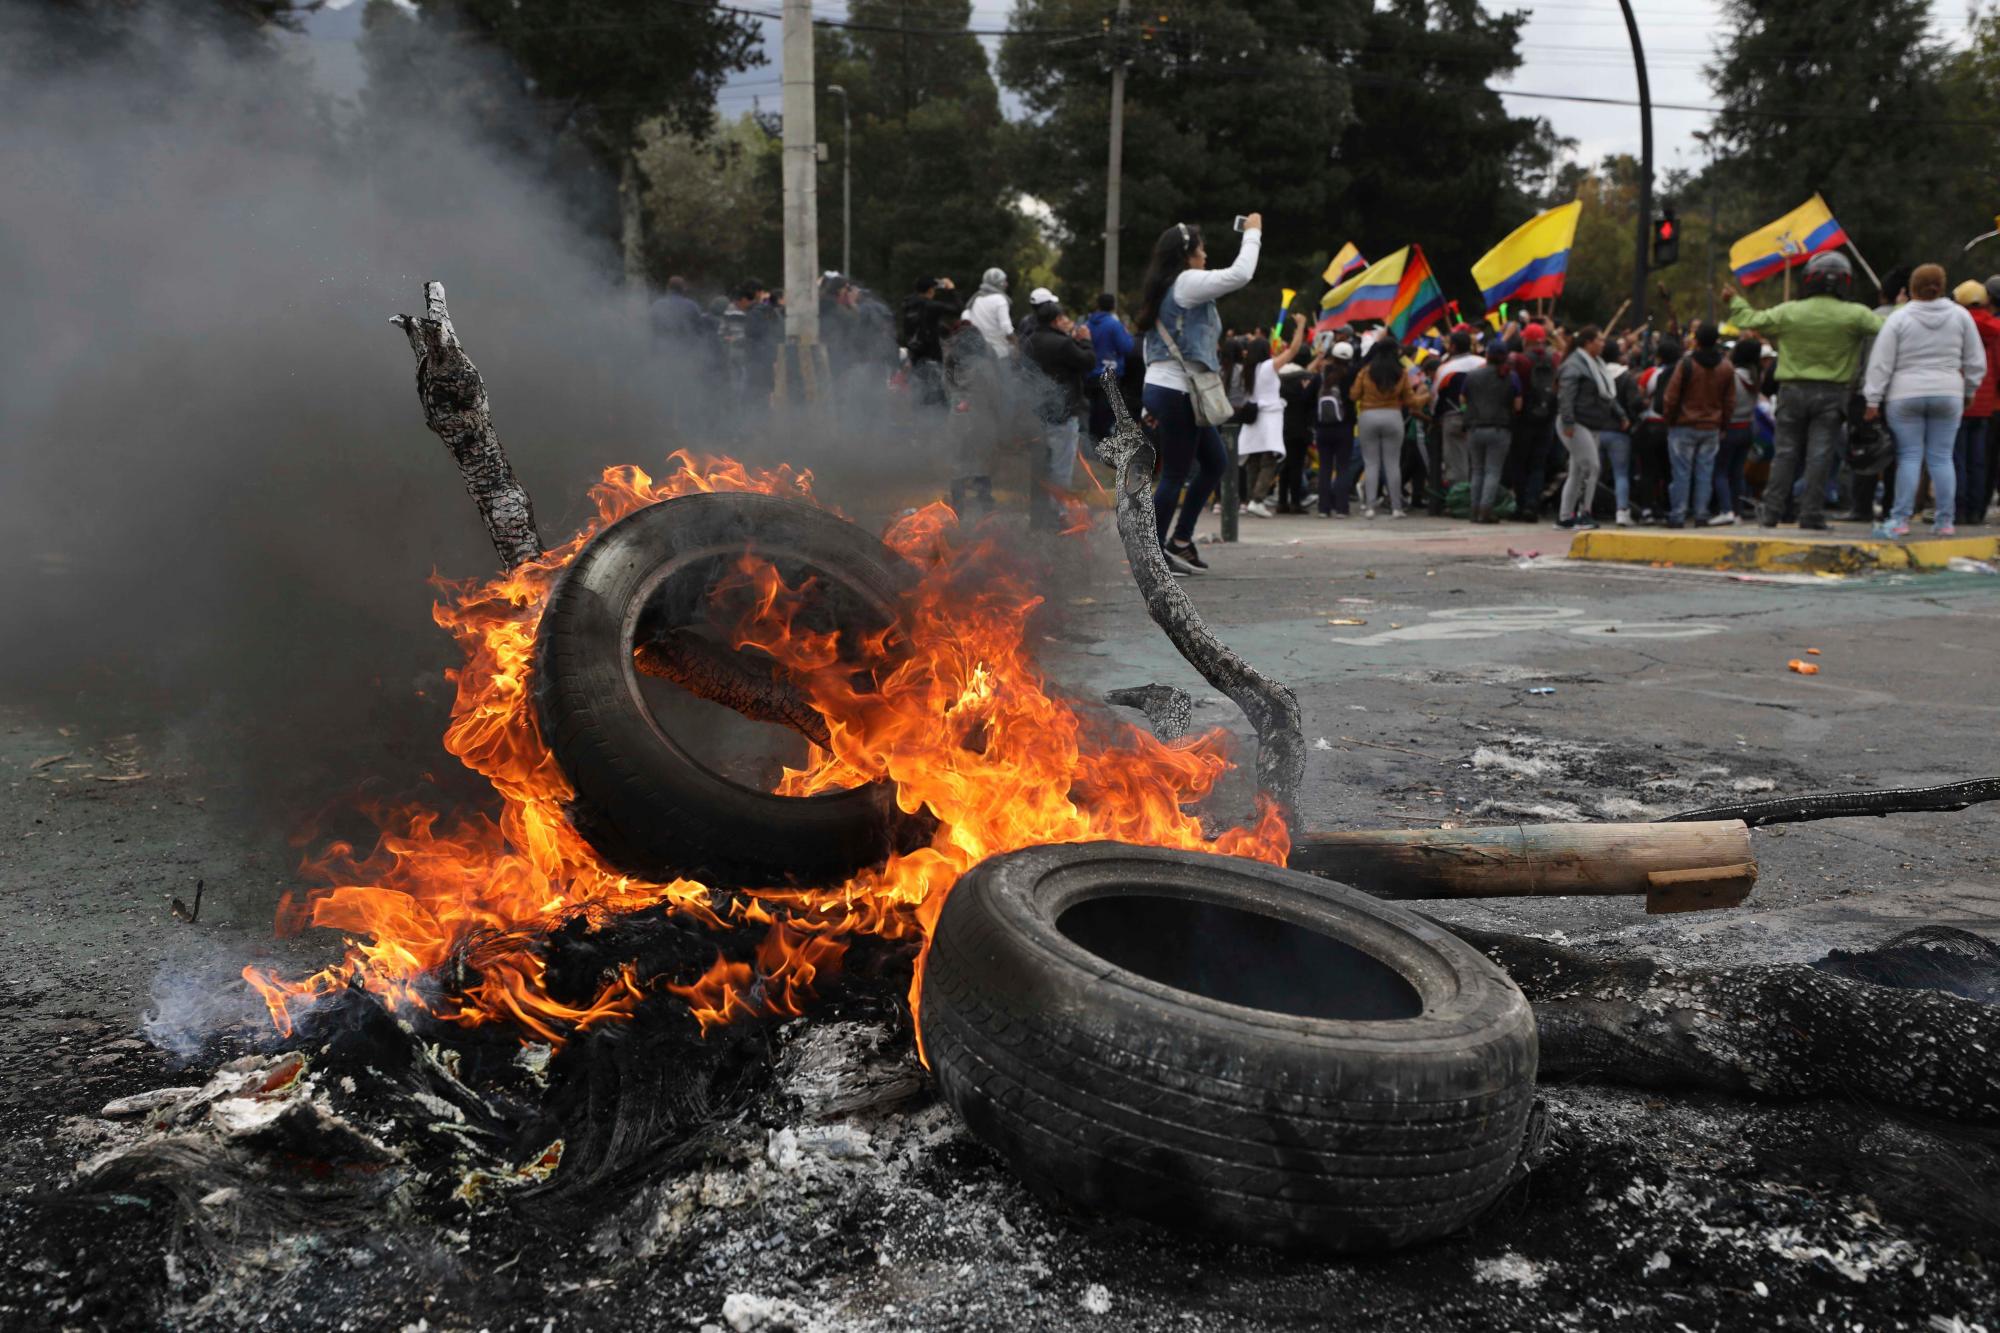 Una barricada arde durante una protesta contra el presidente Lenin Moreno y sus políticas económicas, en Quito, Ecuador, el martes 8 de octubre de 2019. Ecuador ha sufrido días de agitación popular desde que el presidente Moreno eliminó los subsidios al precio del combustible, un paso que desencadenó protestas y enfrentamientos en todo el país sudamericano. 